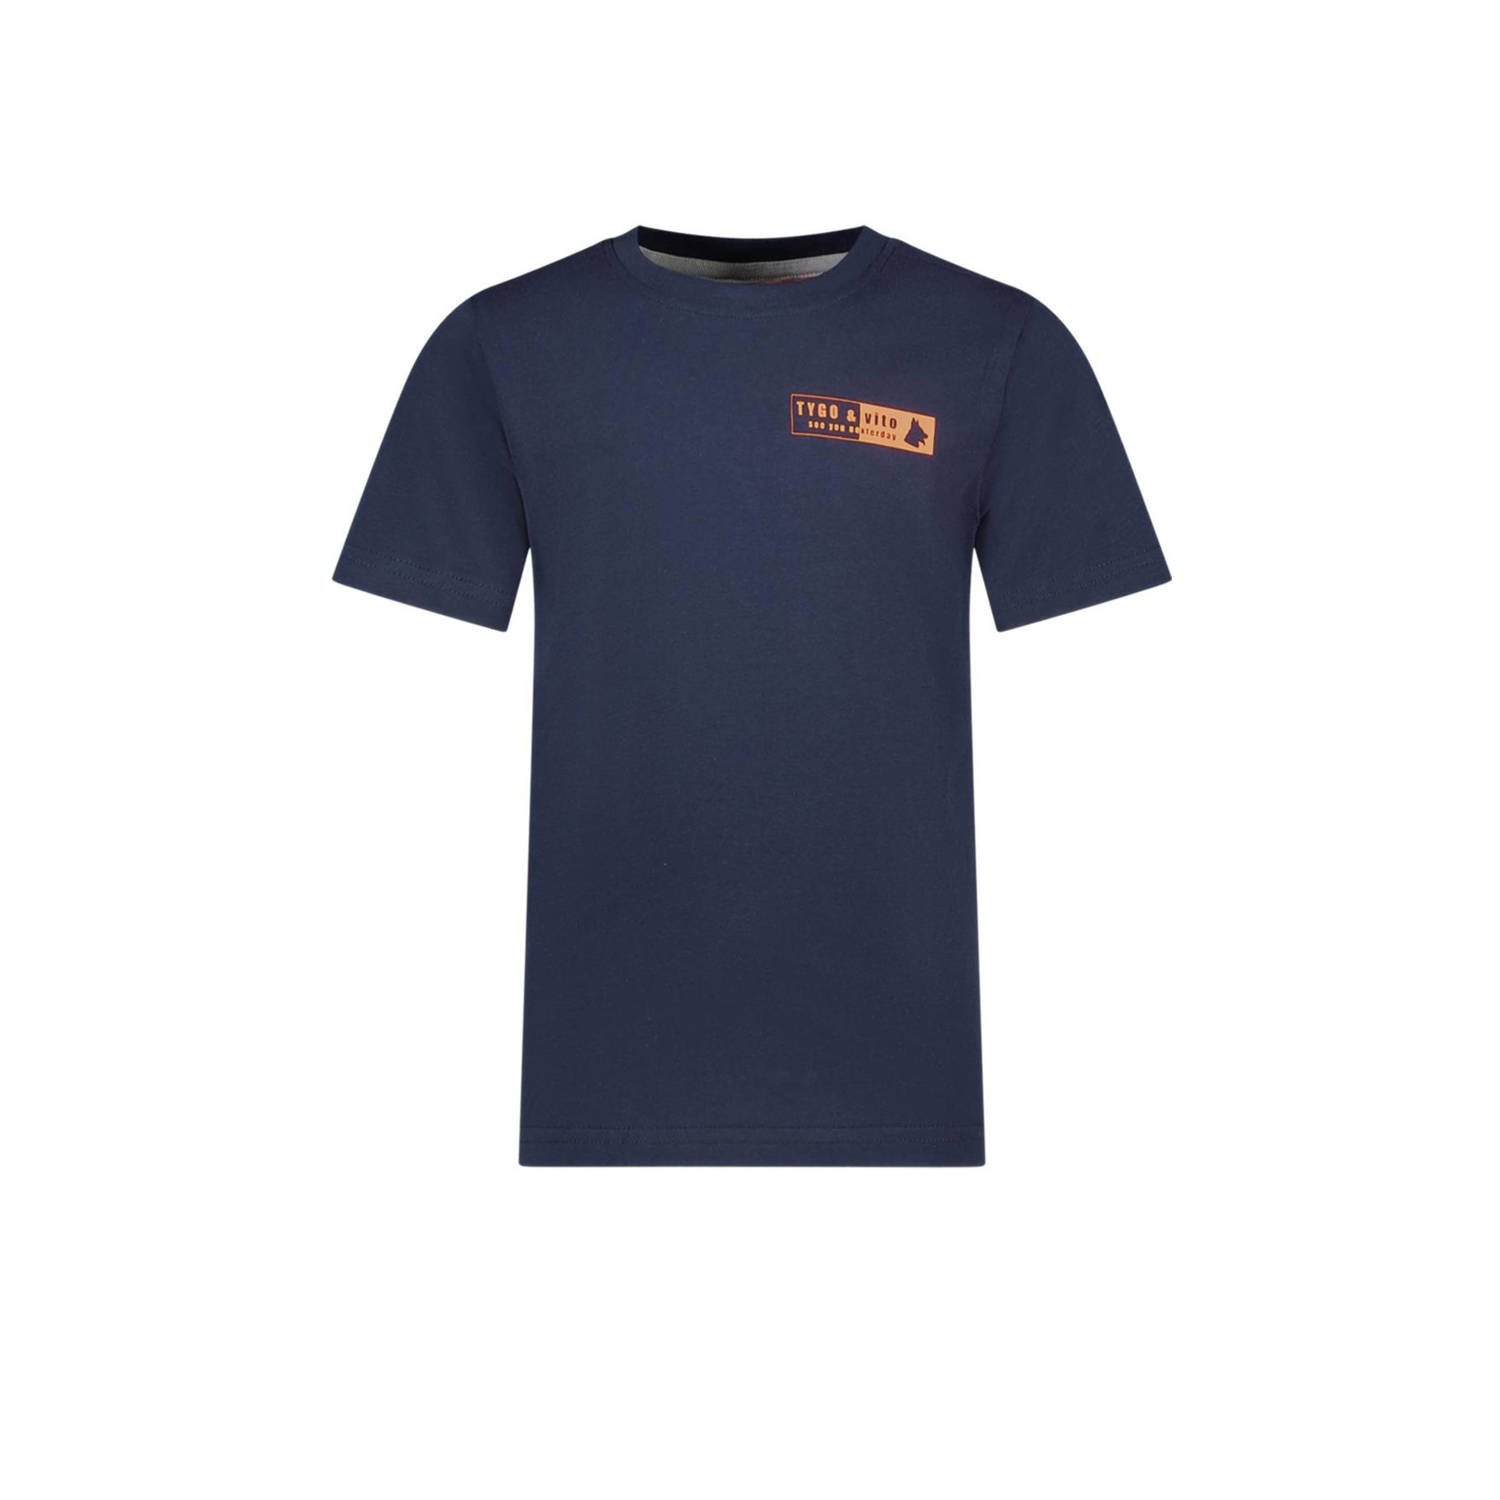 TYGO & vito T-shirt Tijn met printopdruk donkerblauw